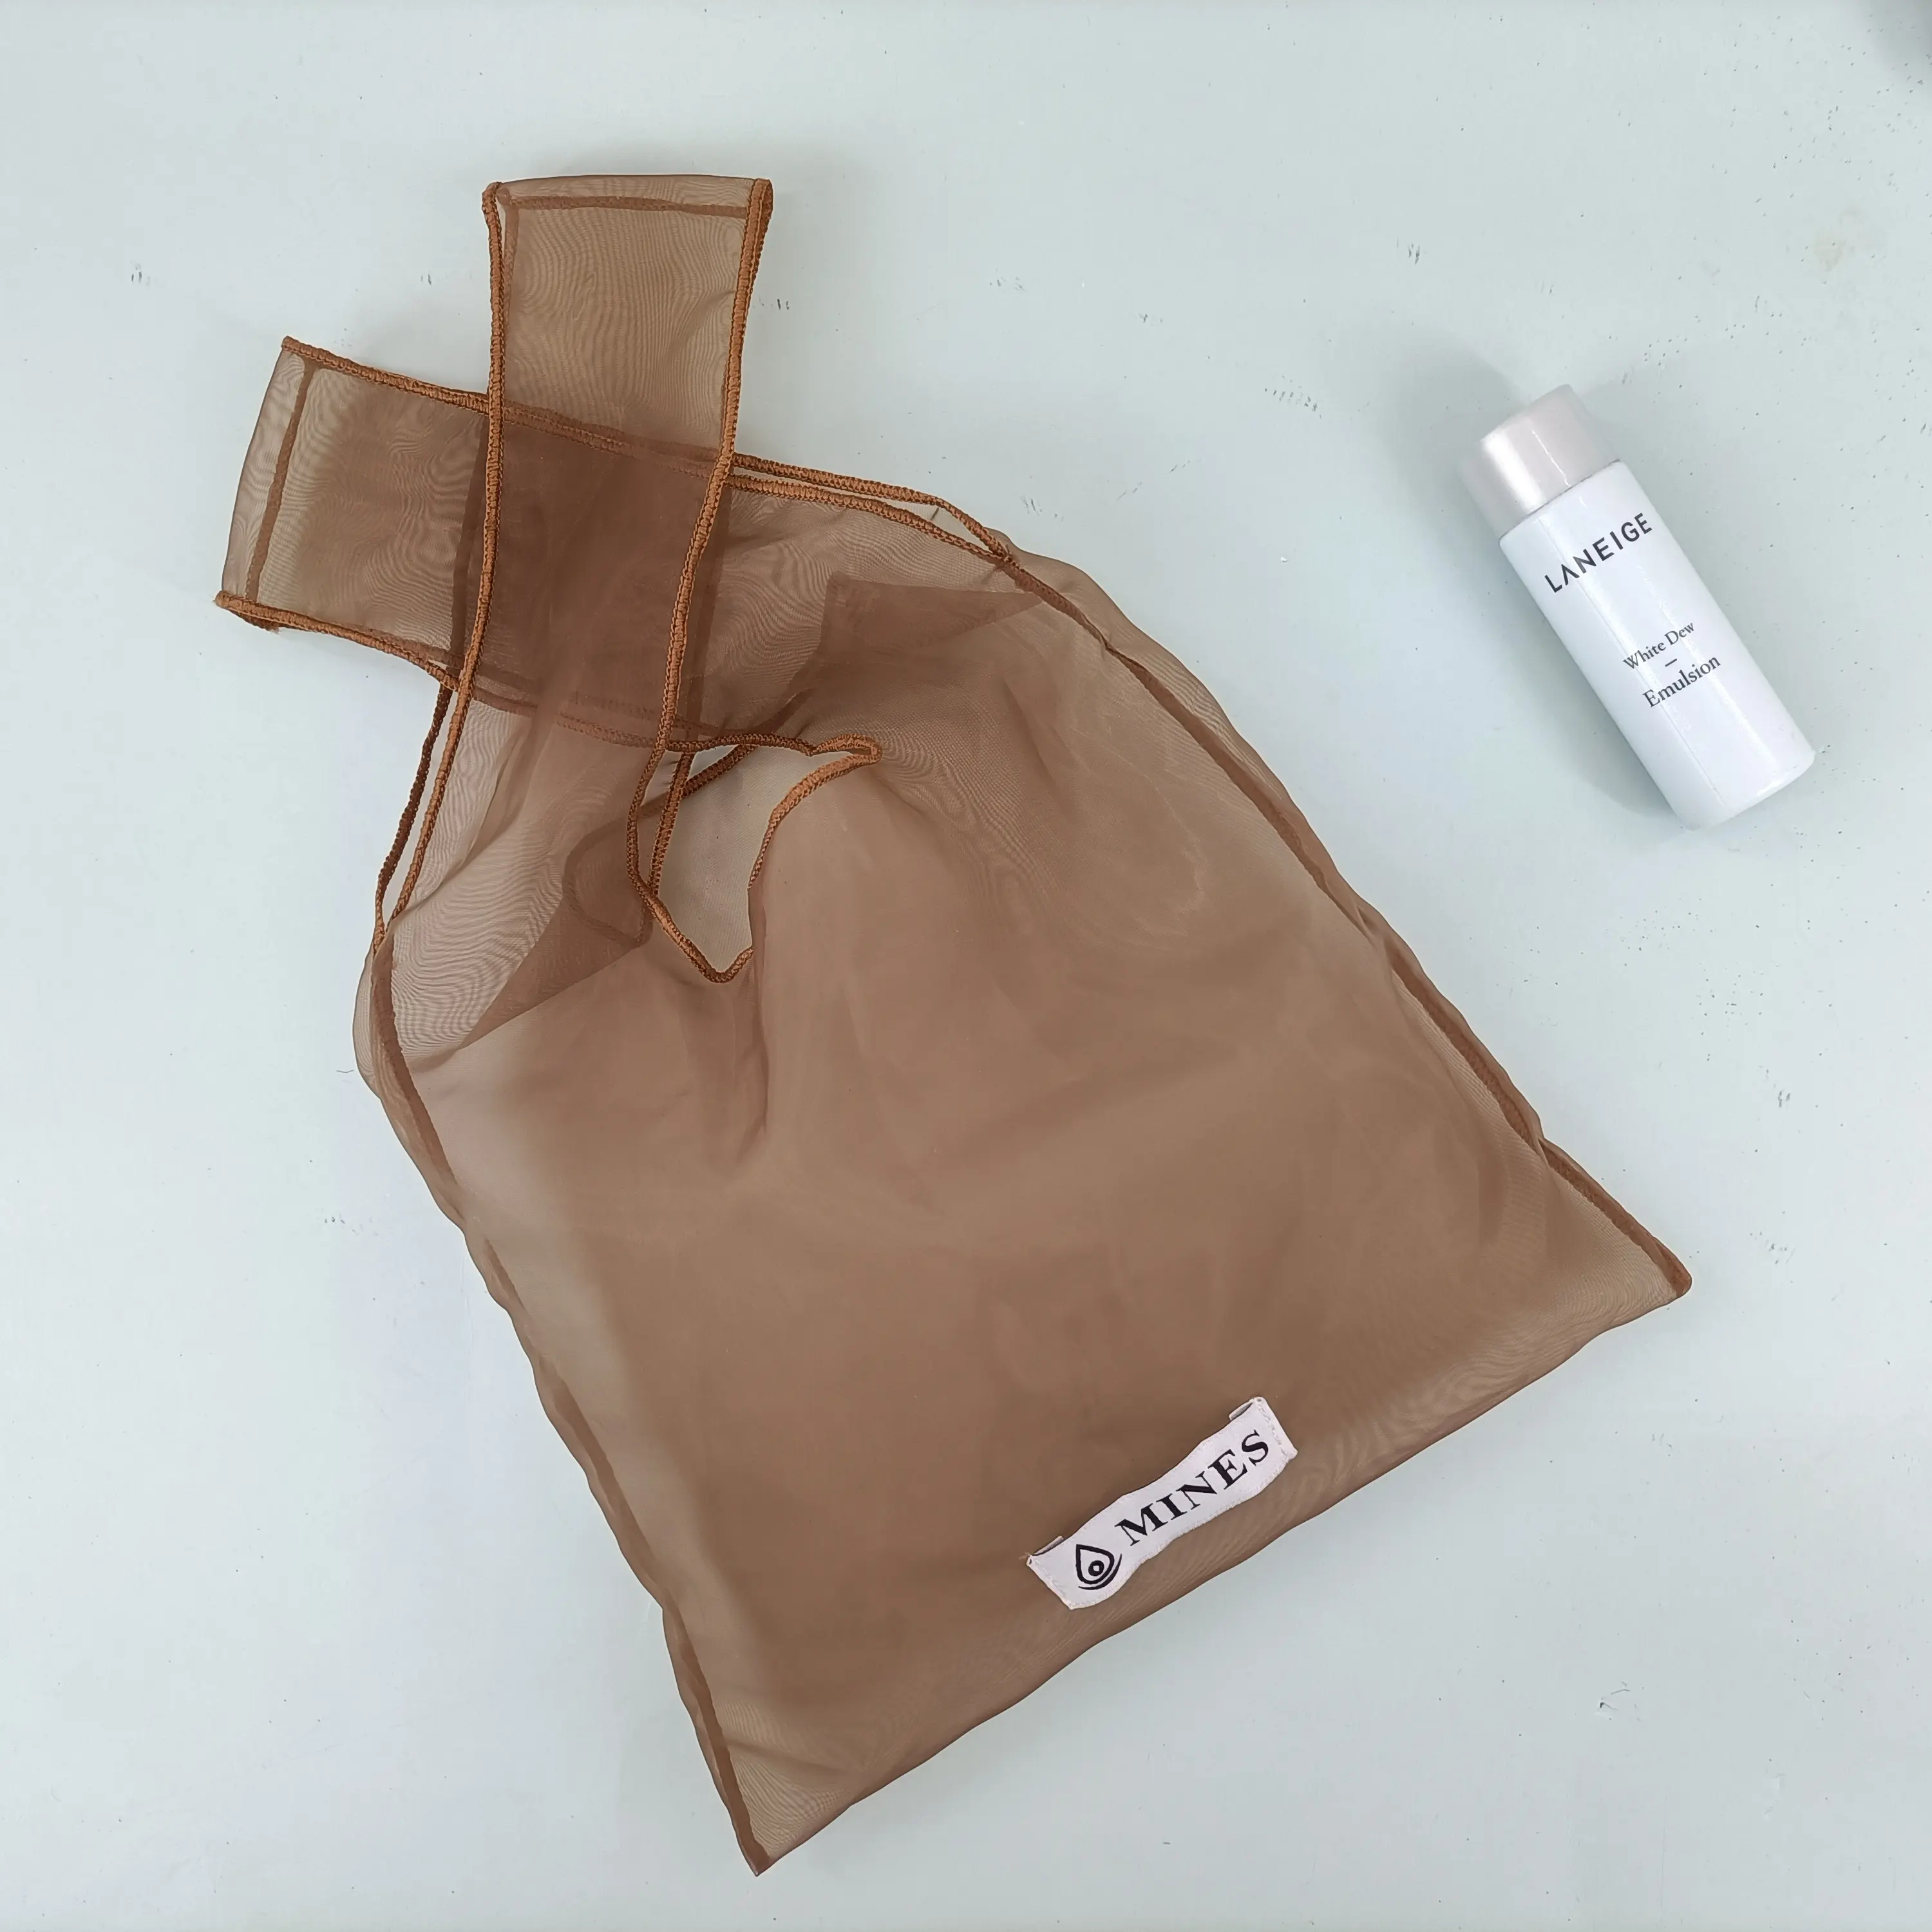 Özel Logo boyutu moda organze sheer alışveriş çantaları organze Tote çanta organze kumaş kılıfı kolu ile